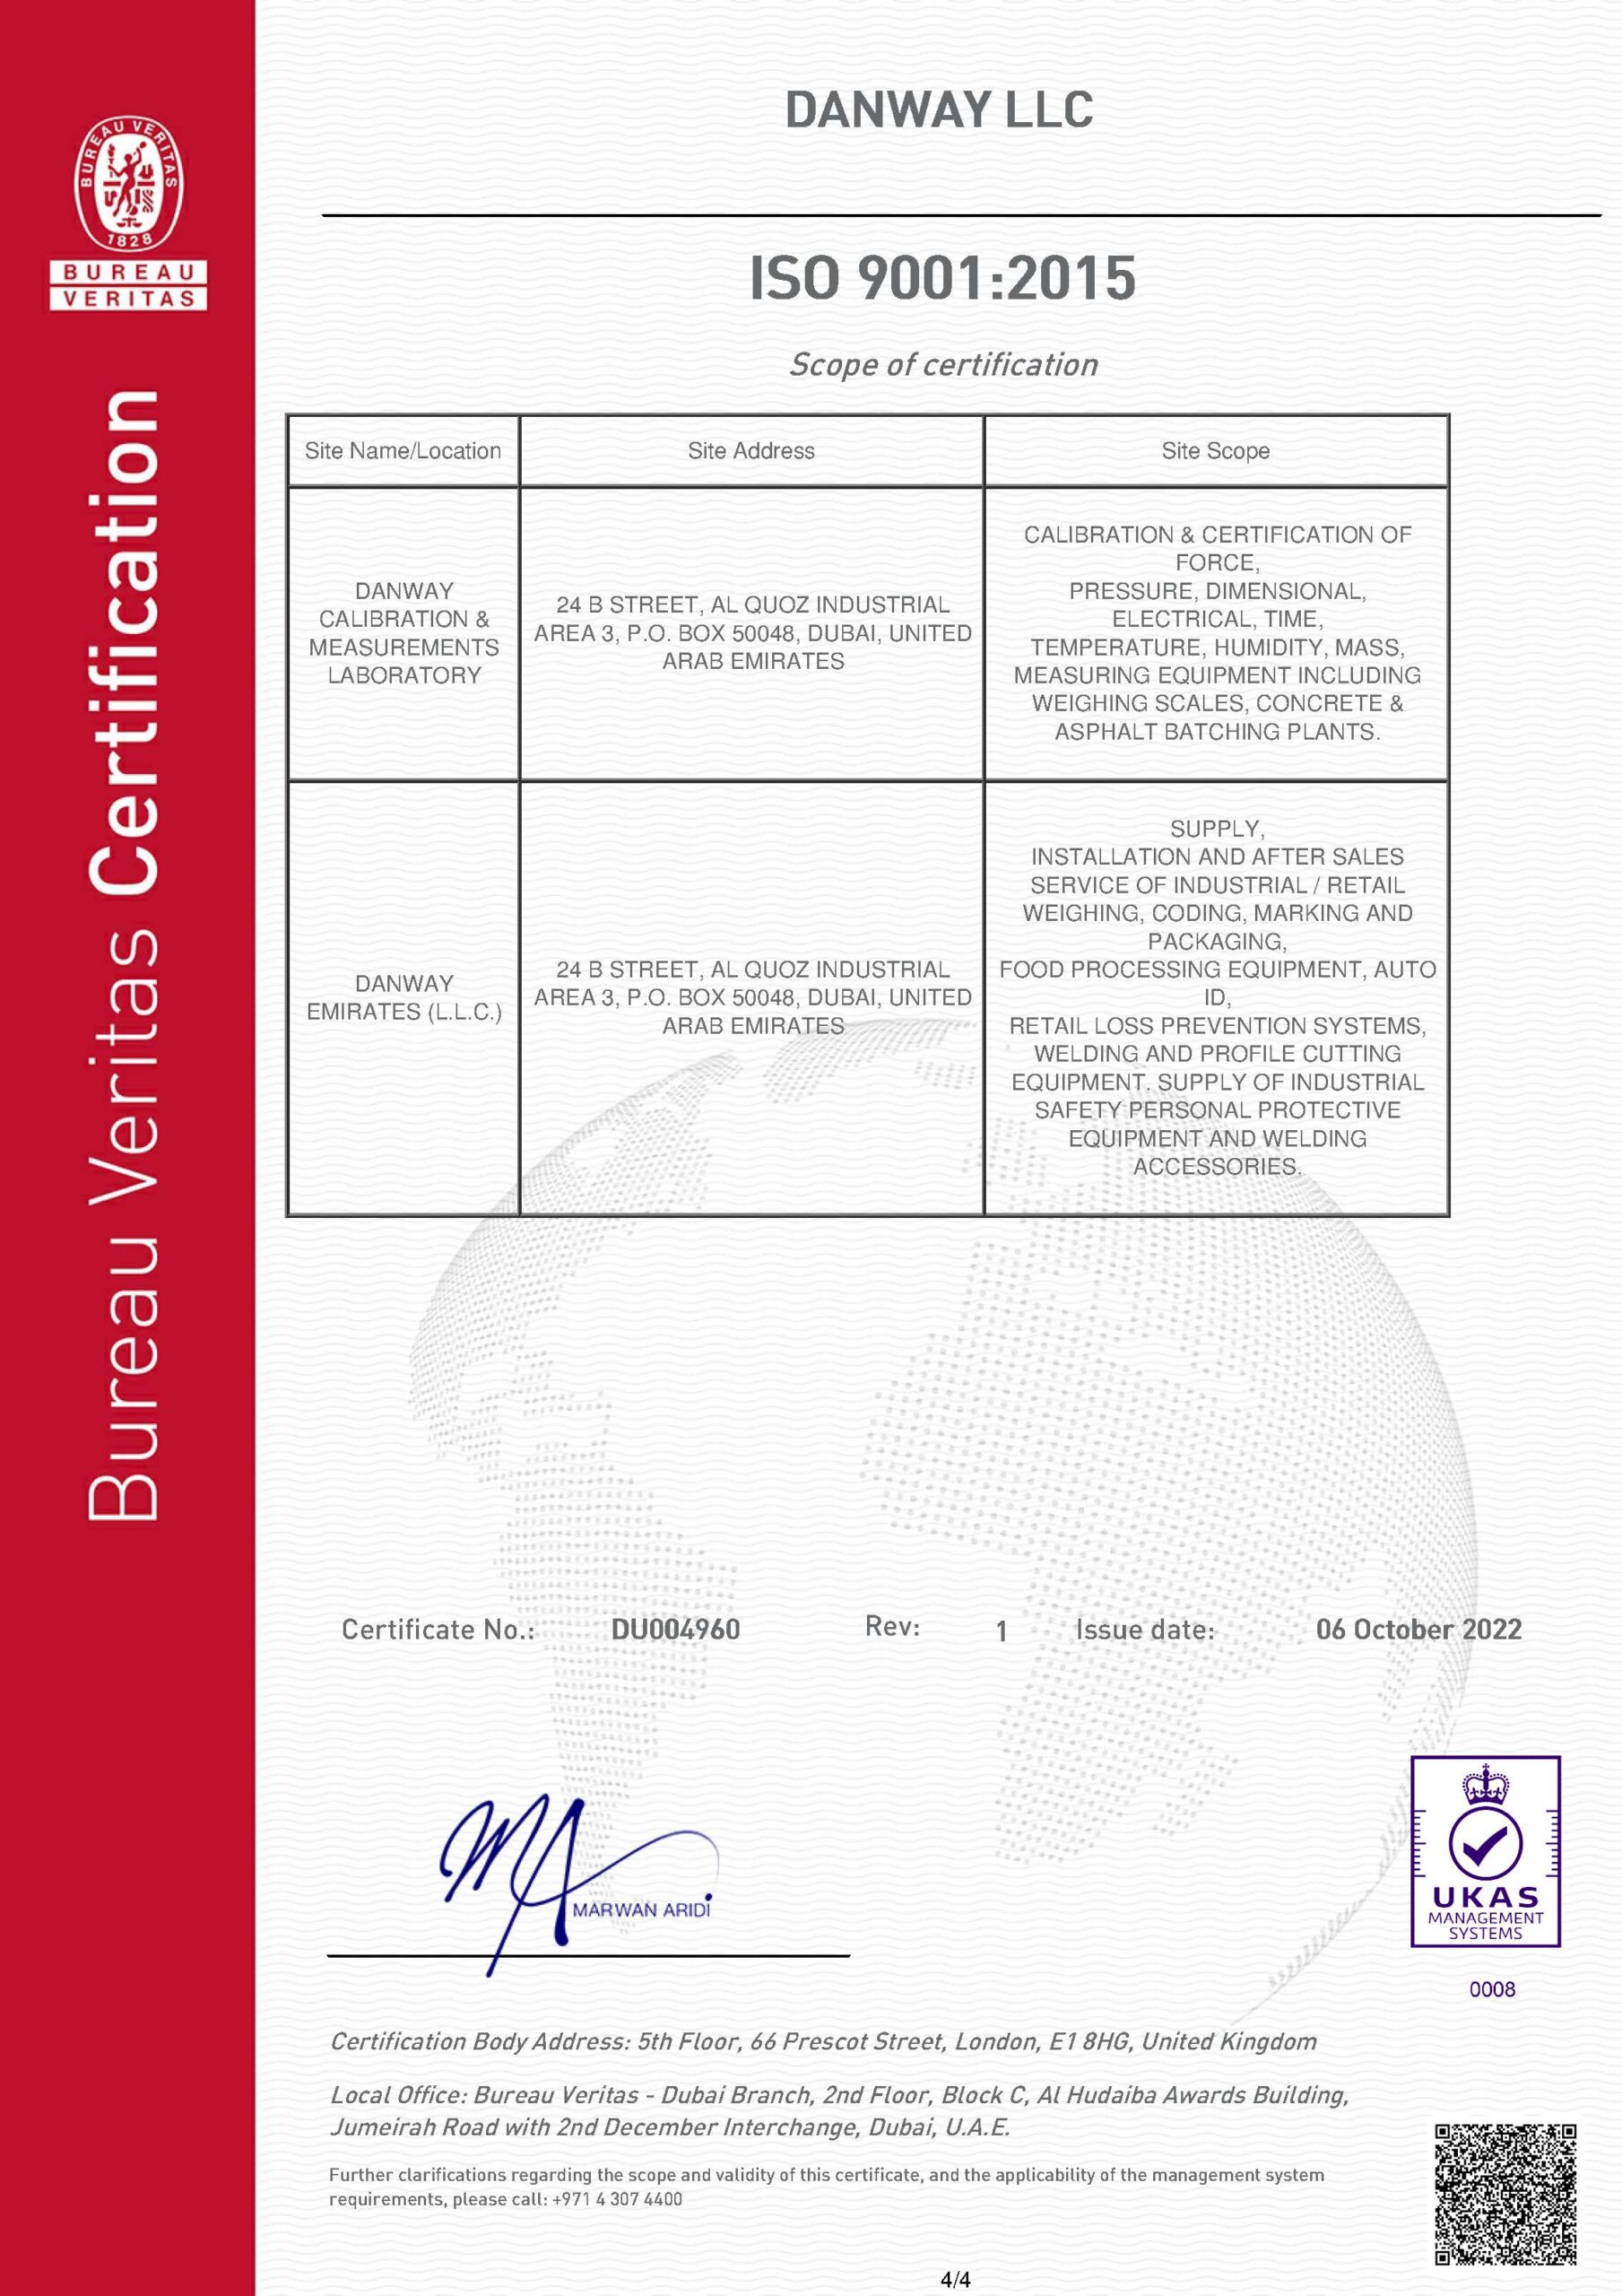 ISO45001:2015 Danway LLC, 4 of 4